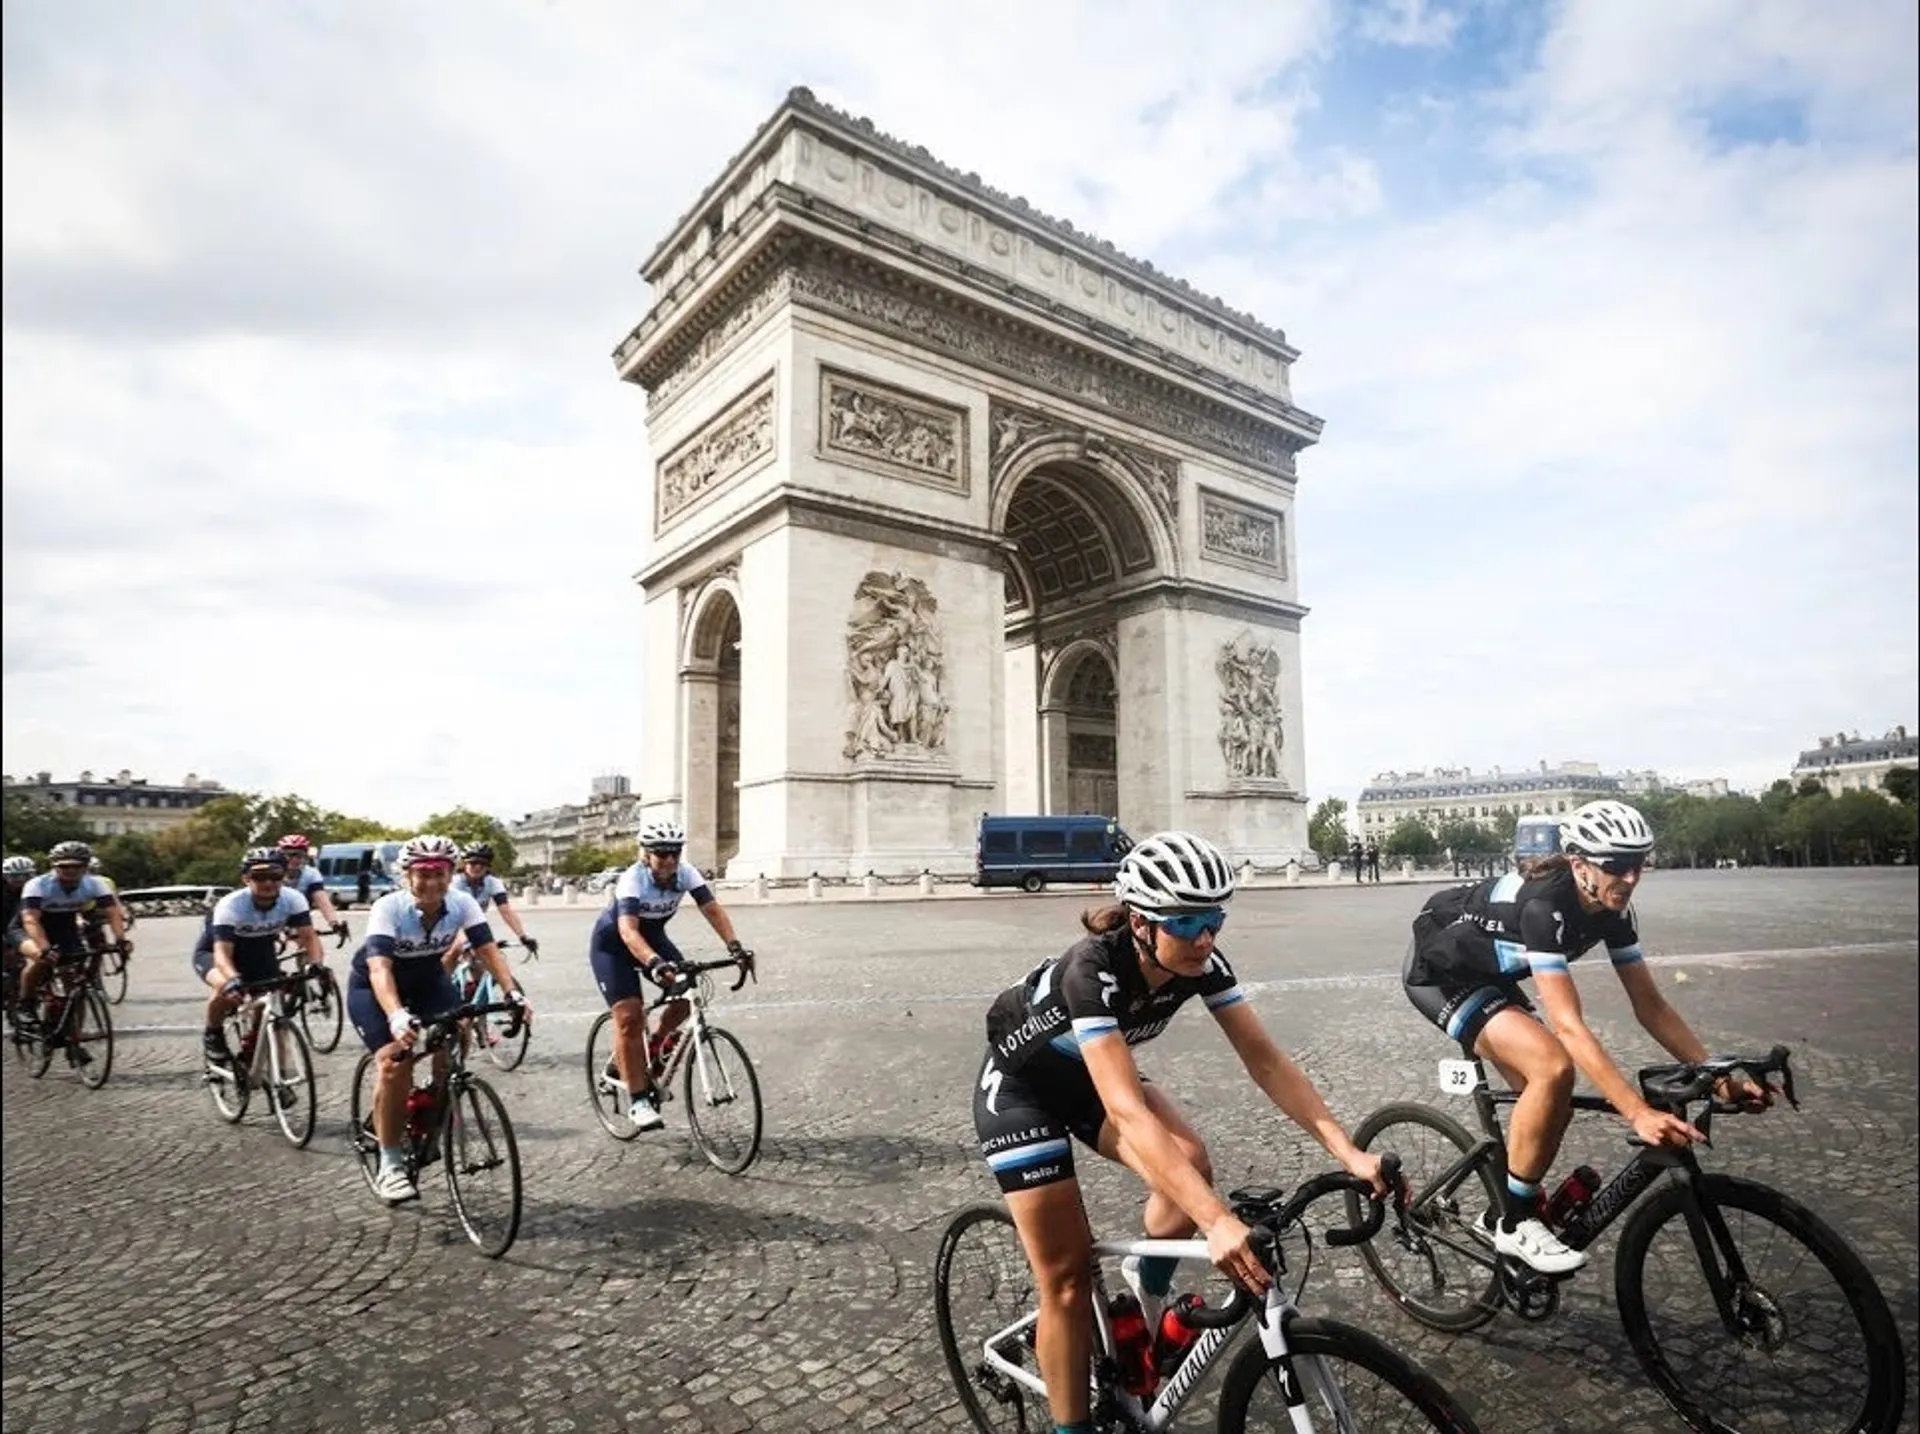 Hotchillee The London-Paris by Tour de France